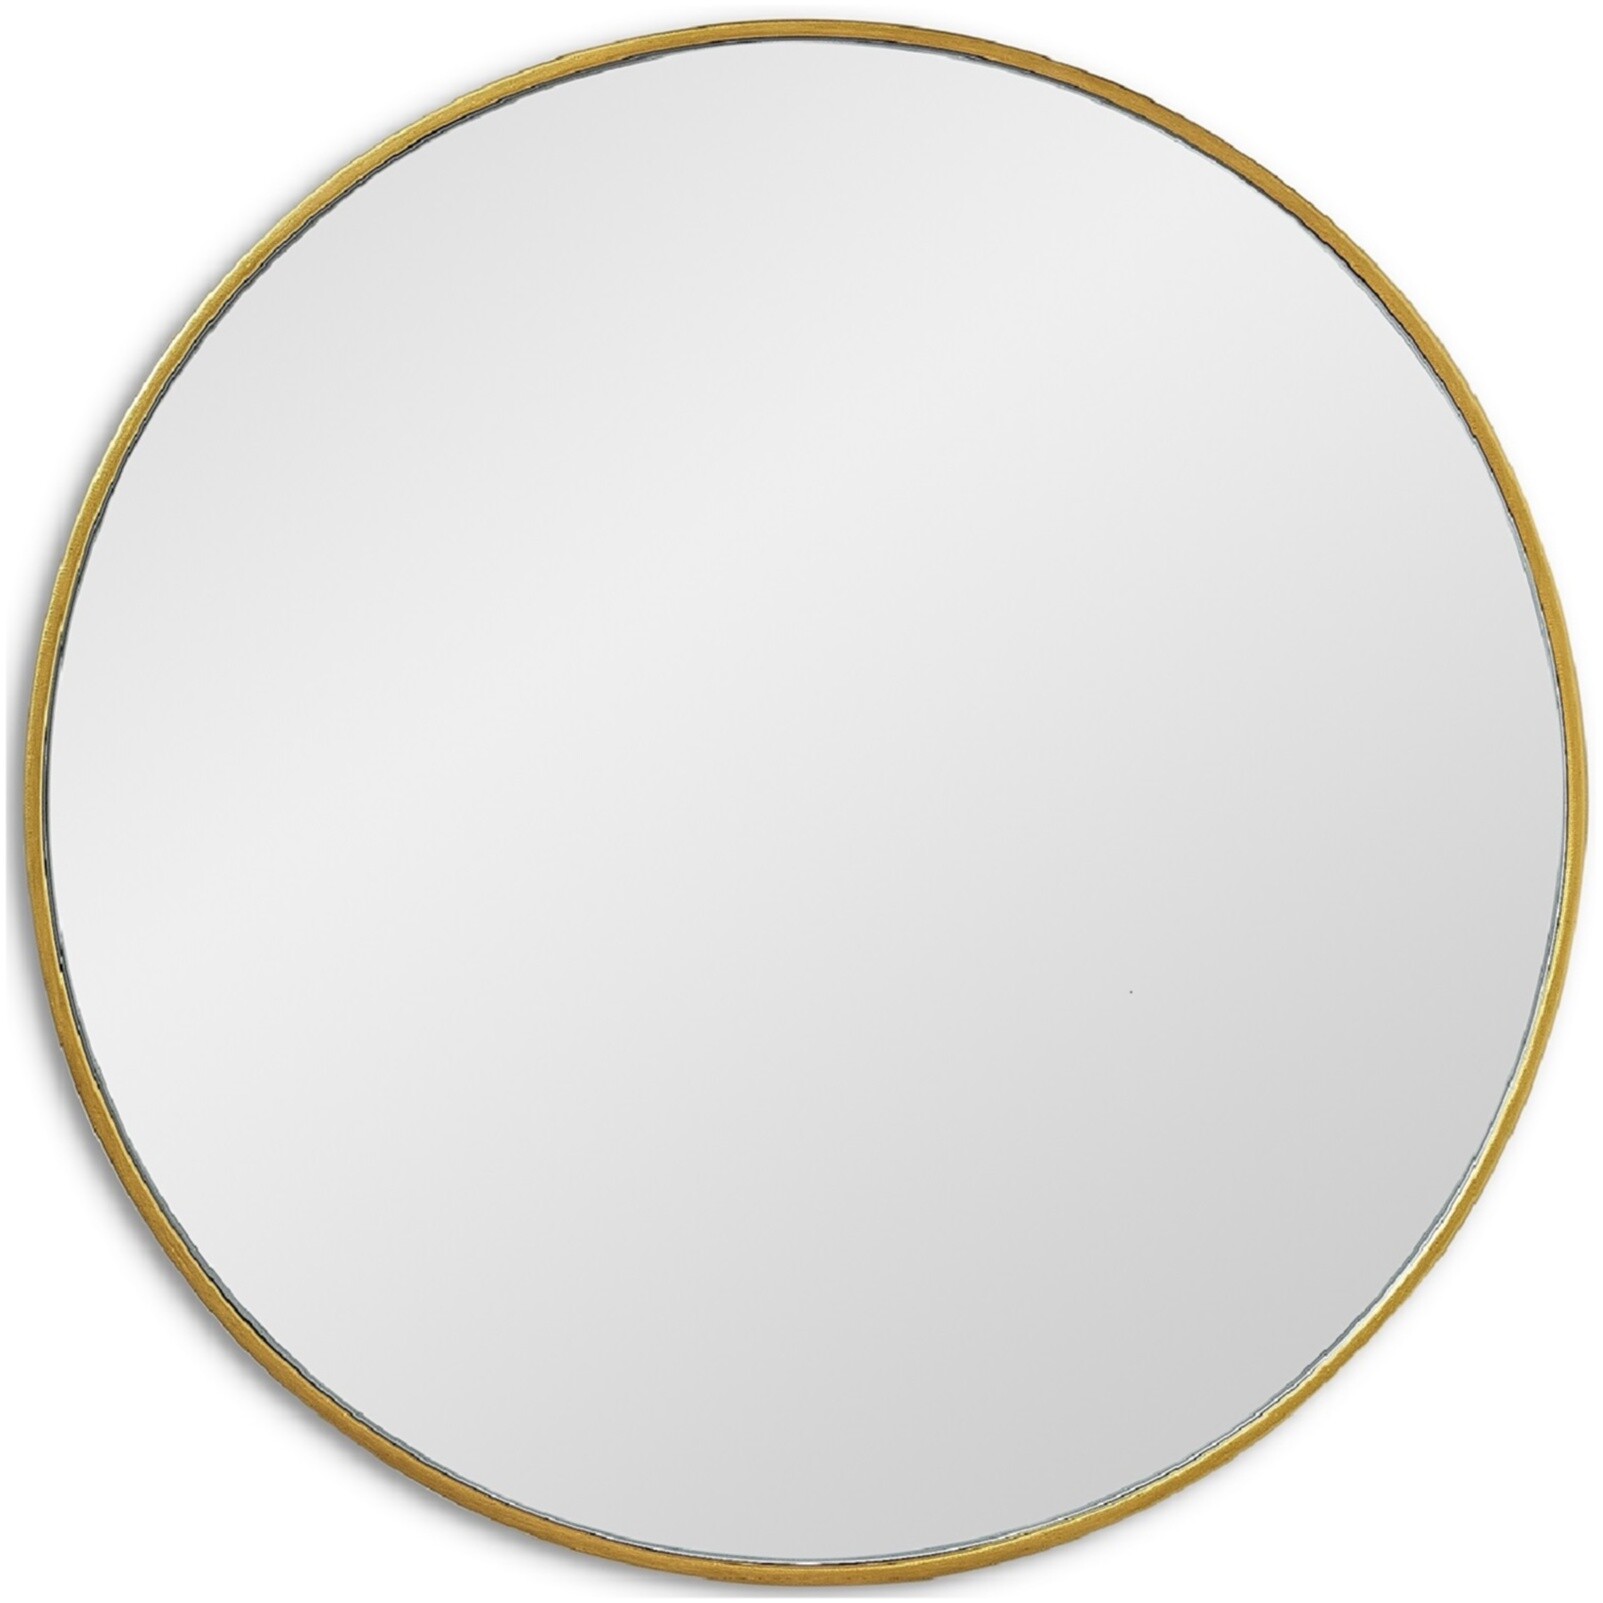 Зеркало настенное круглое в тонкой раме 90 см золото Ala L Gold Smal